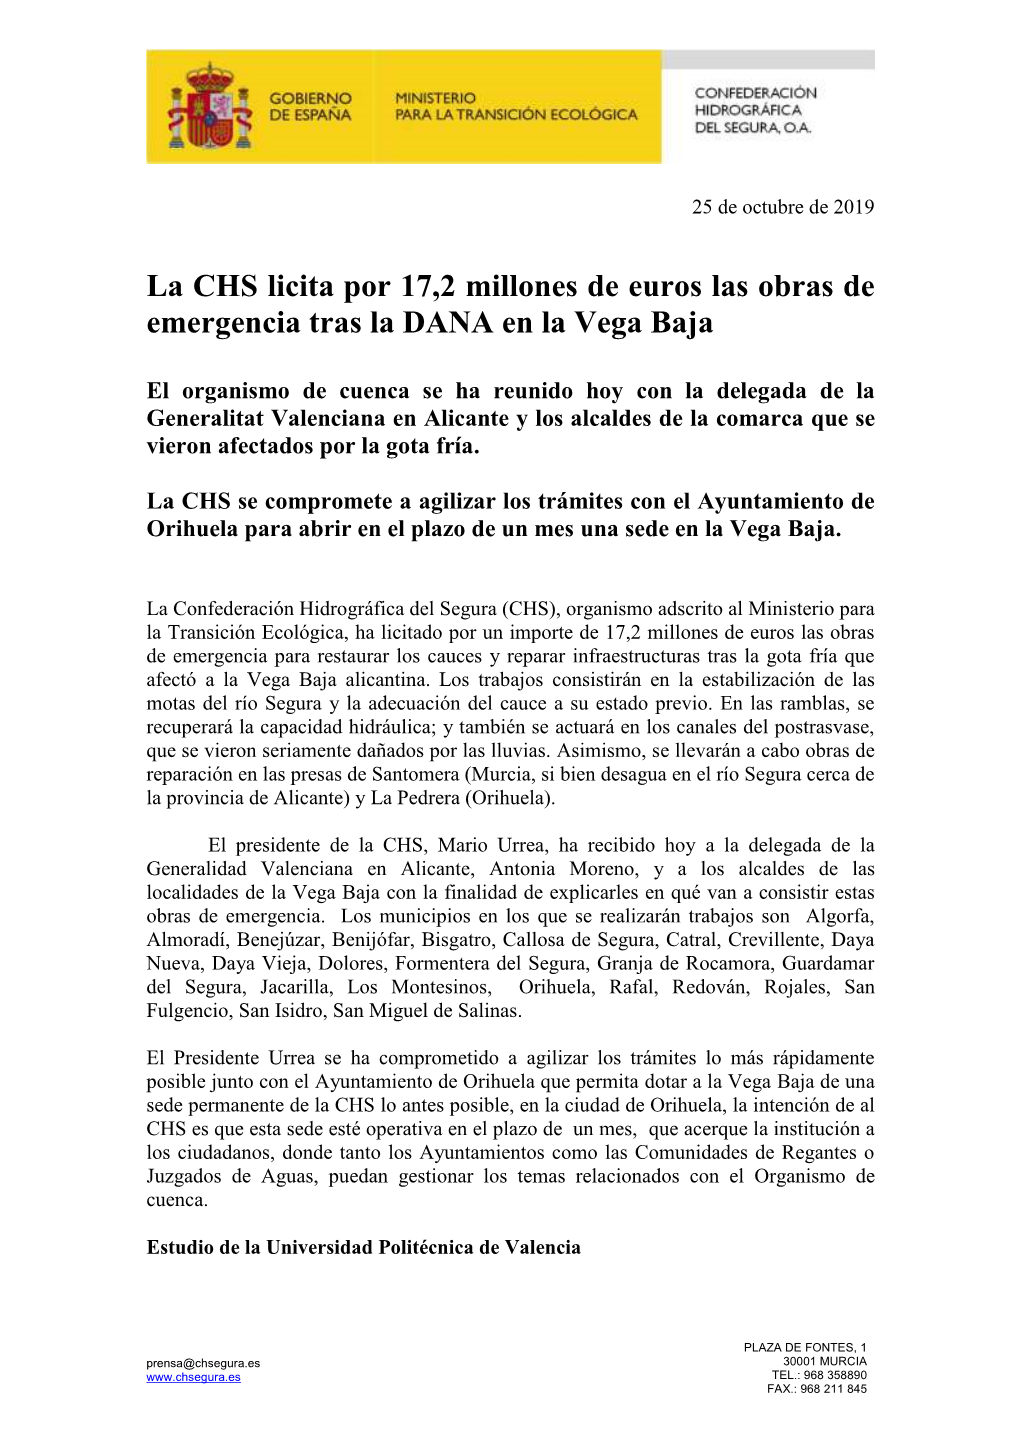 La CHS Licita Por 17,2 Millones De Euros Las Obras De Emergencia Tras La DANA En La Vega Baja